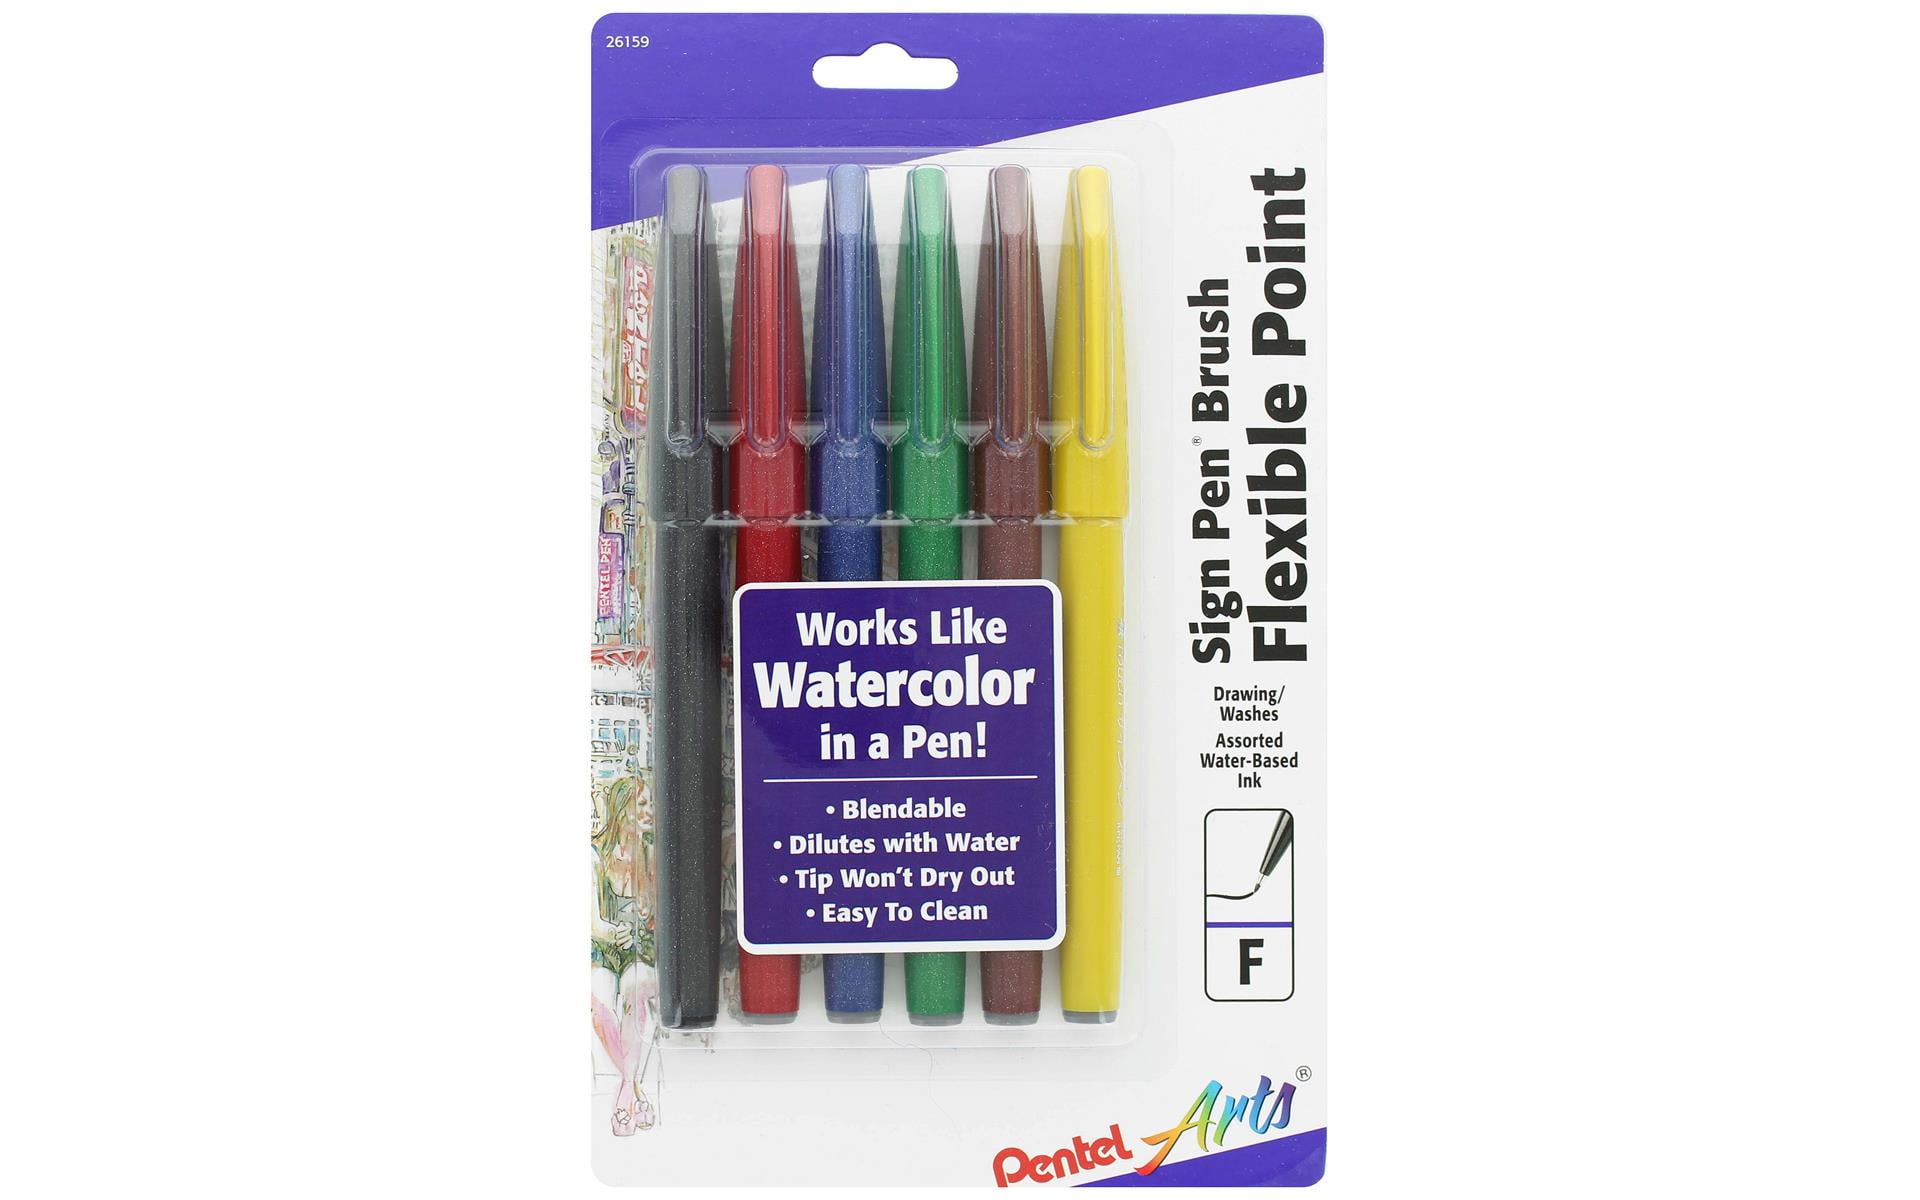 Staedtler Double-Ended Fiber-Tip Pens - Set of 120